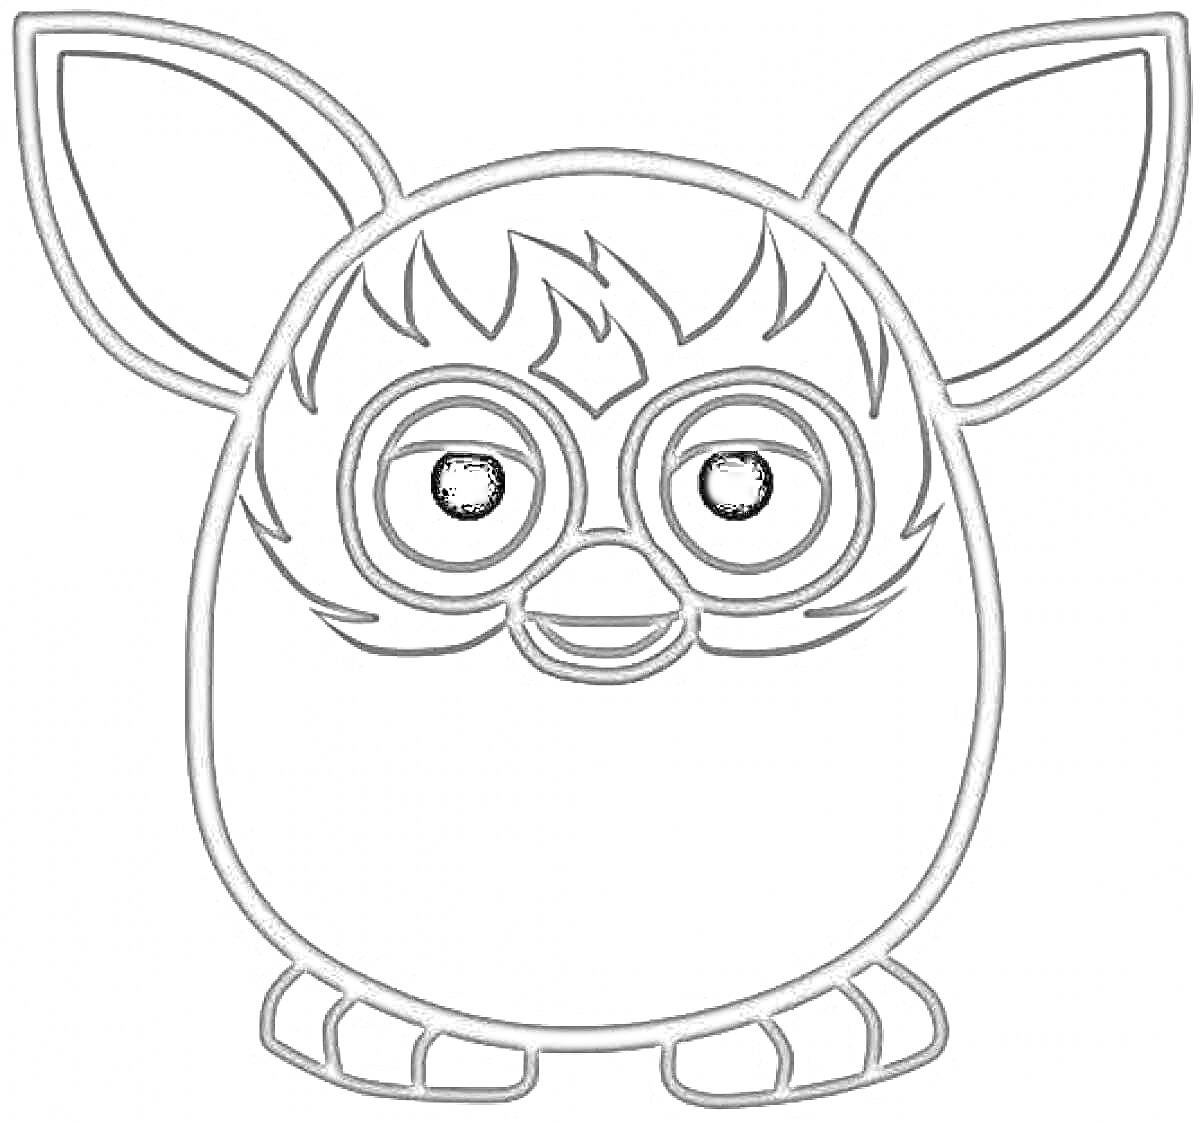 Раскраска Ферби Бум с большими ушами и узорной маской вокруг глаз